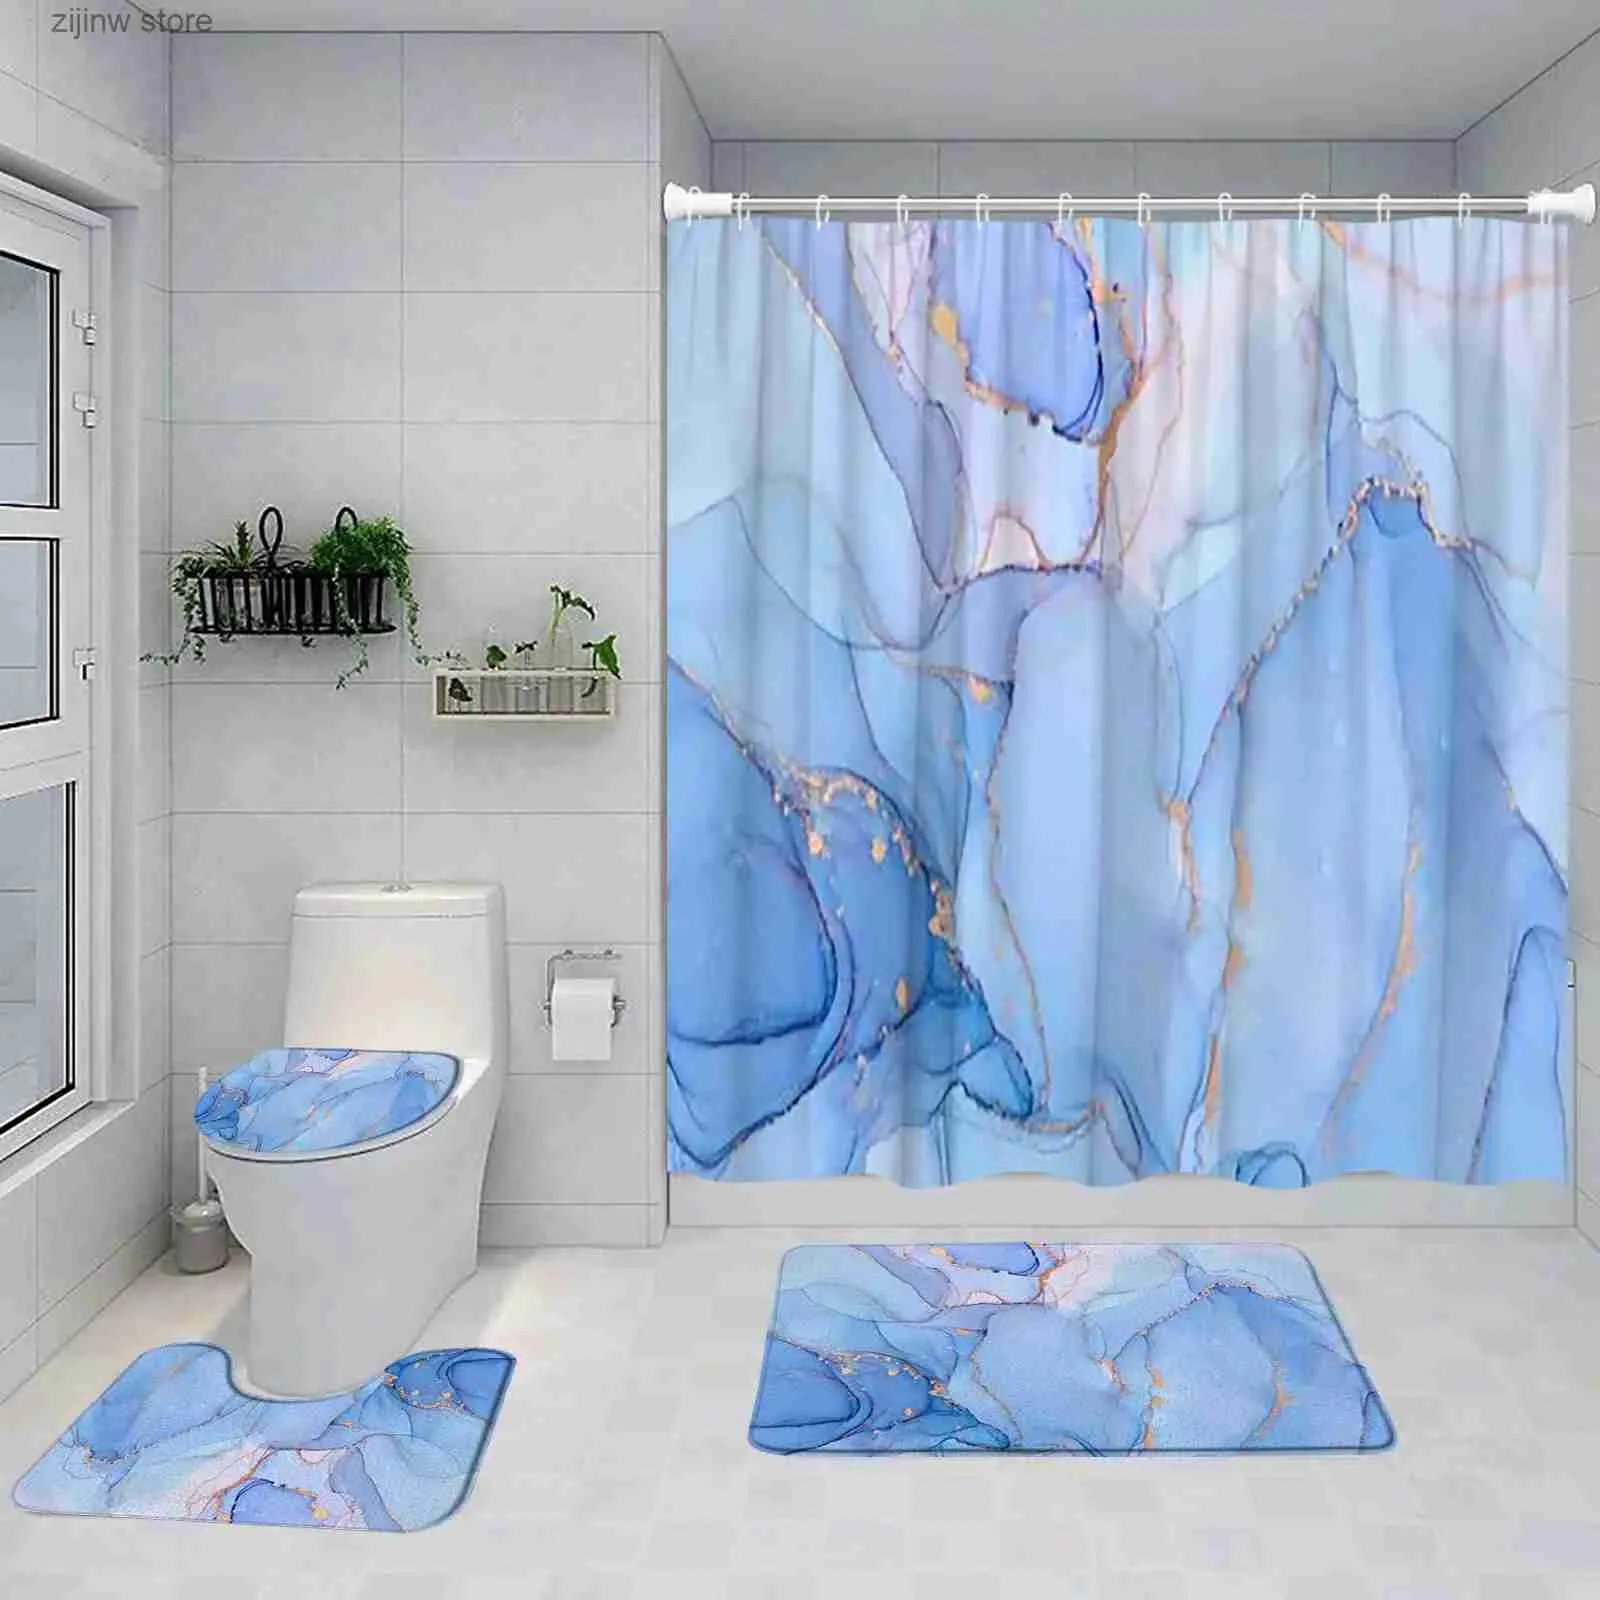 Cortinas de chuveiro azul mármore cortina de chuveiro conjunto arte abstrata pintada moderna decoração de banheiro tapete de banho pedestal tapete antiderrapante tampa de banheiro y240316